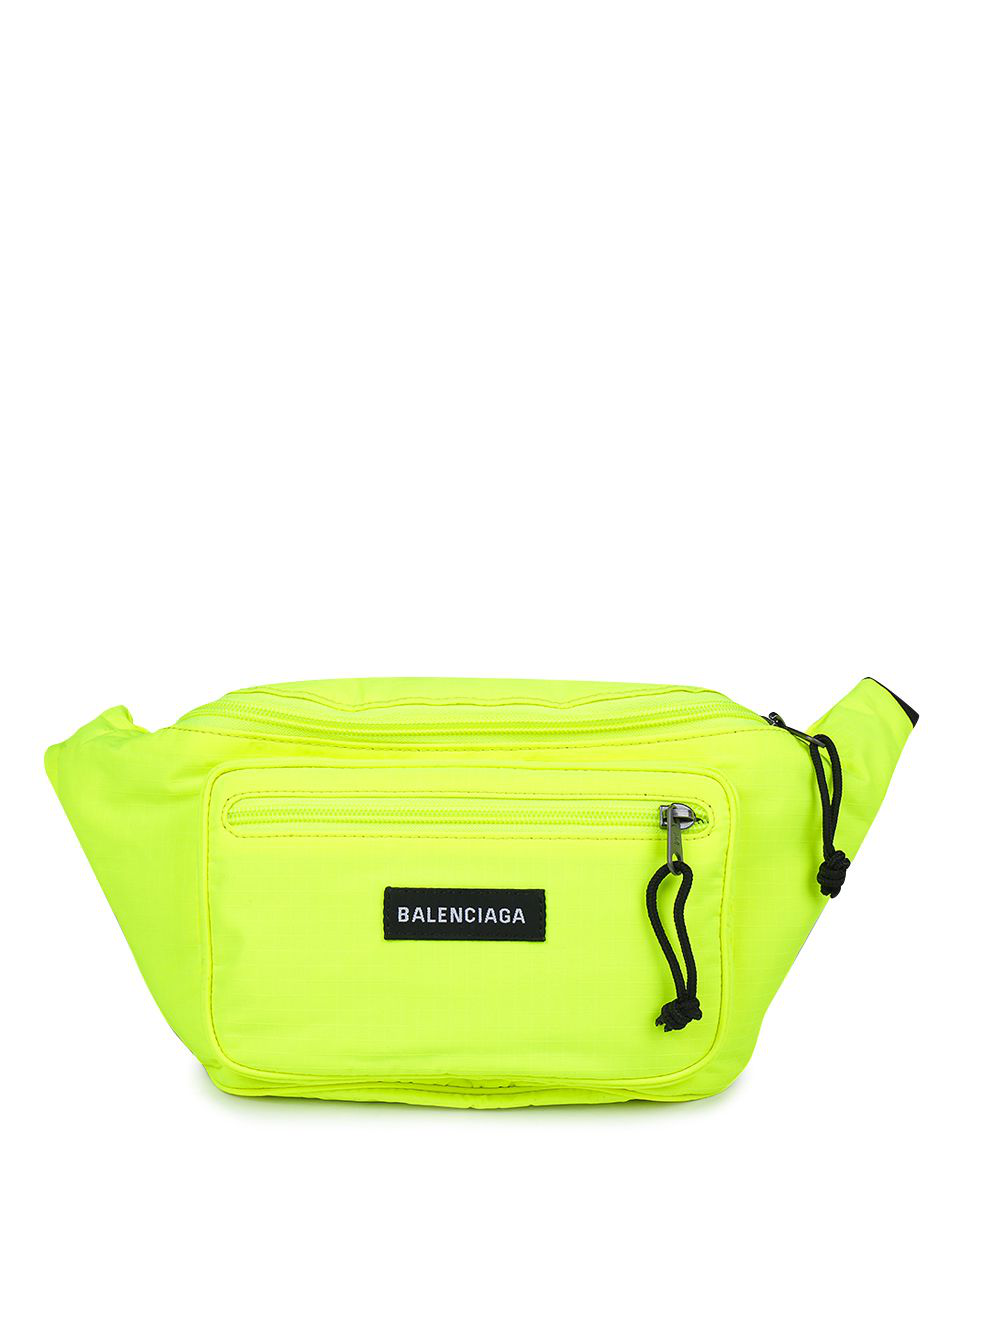 Balenciaga - Belt Bag In Jaune Fluo | ModeSens